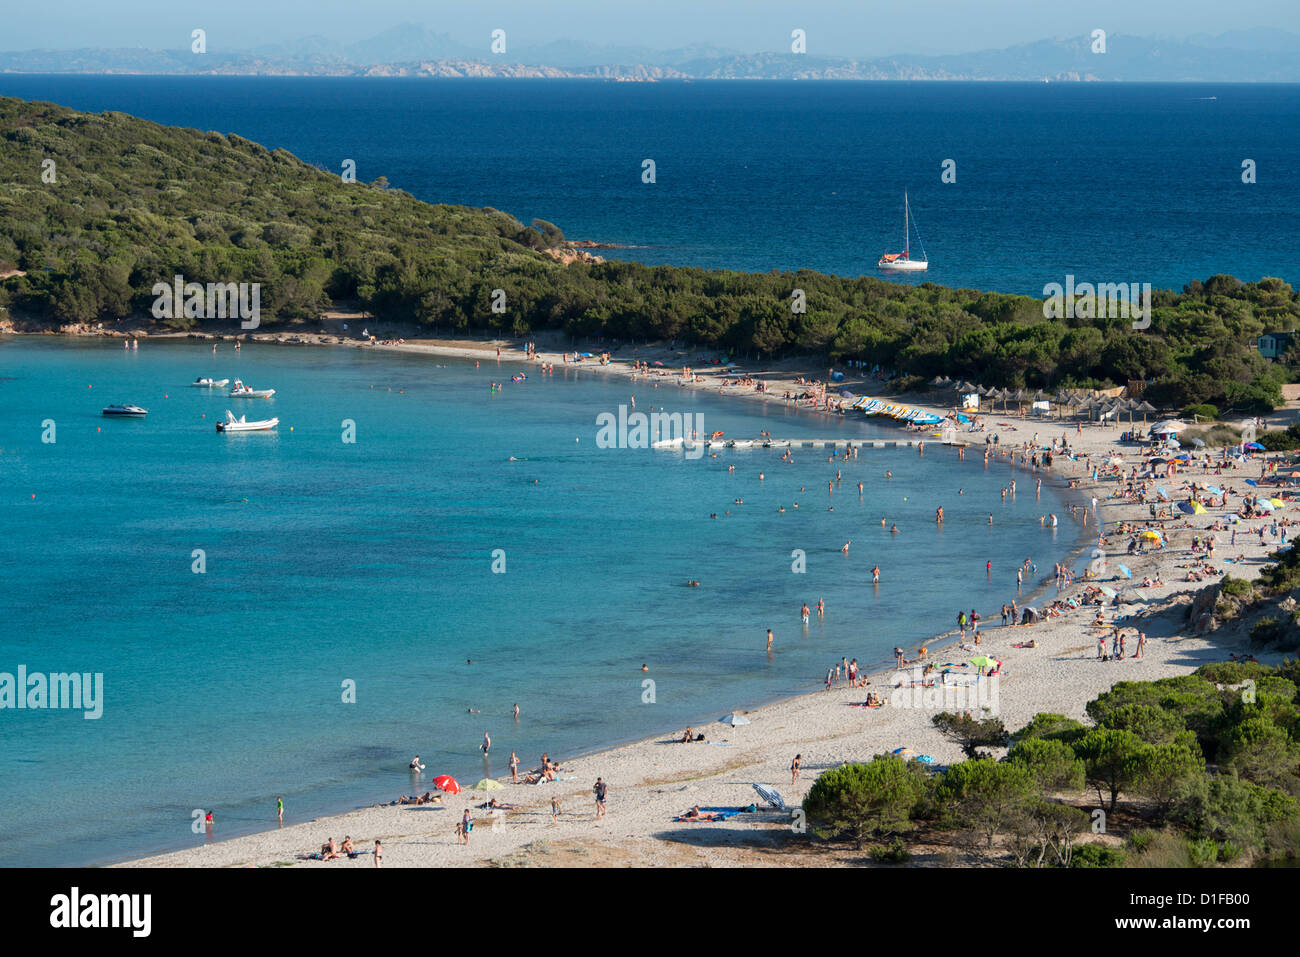 Une vue aérienne de rondinara Plage près de Bonifacio en Corse, France, Europe, Méditerranée Banque D'Images